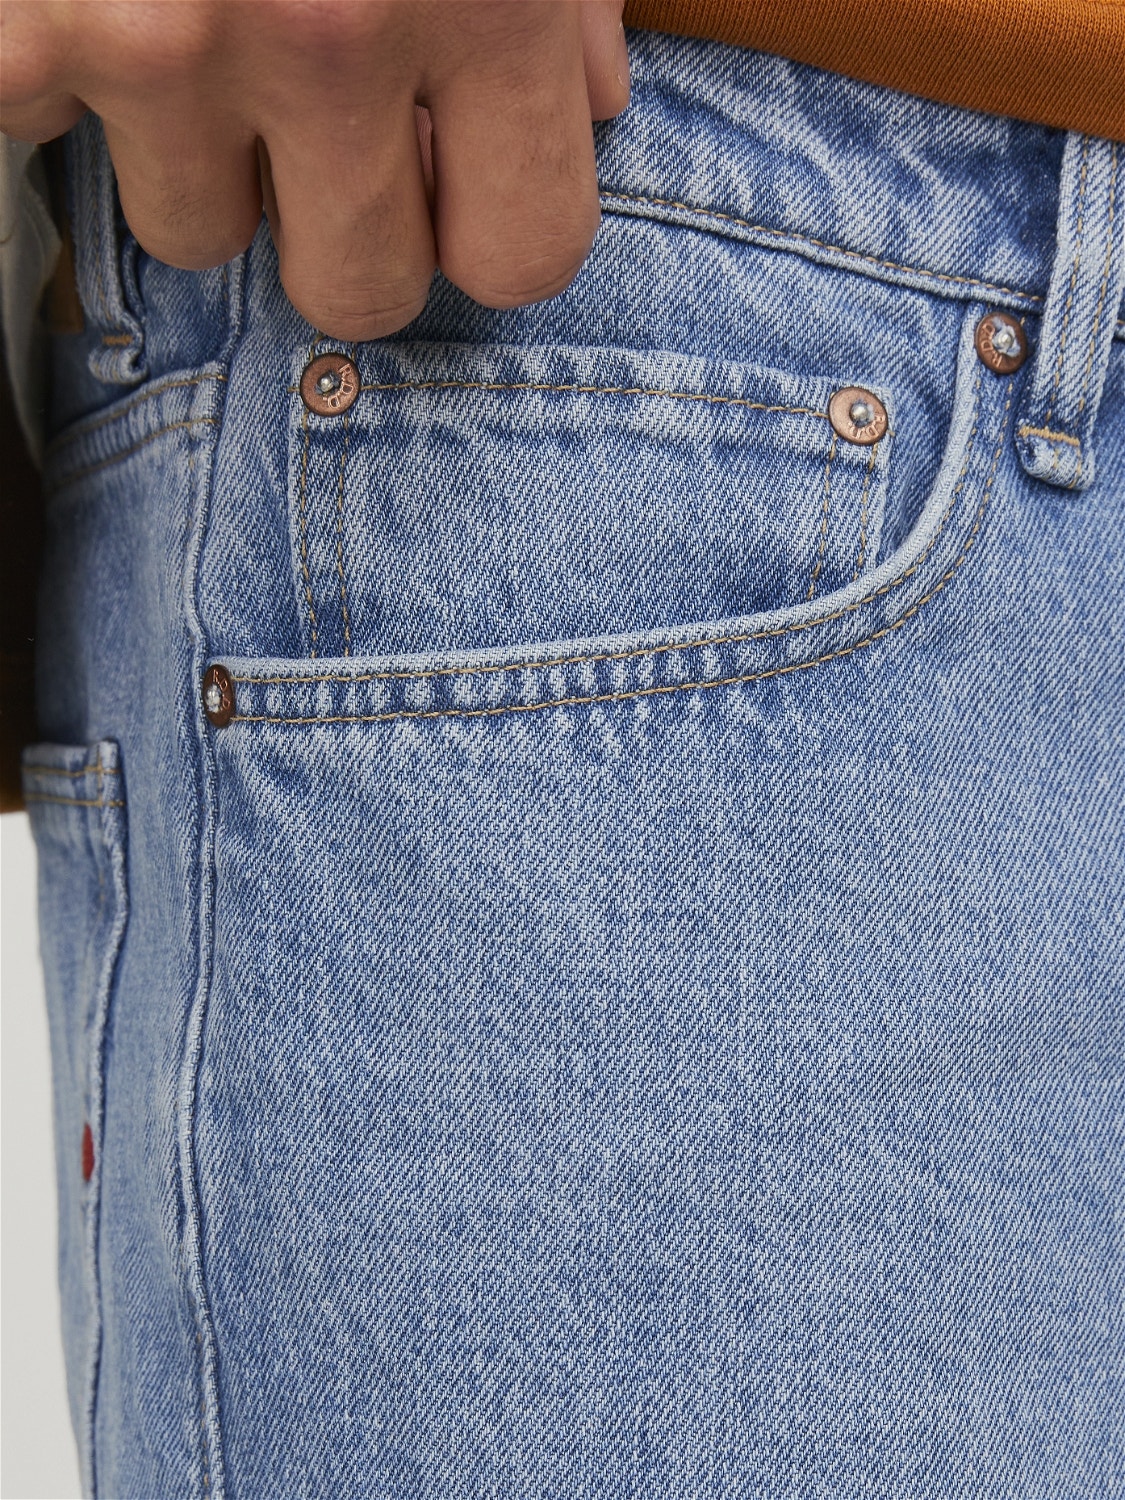 Jack & Jones RDD Loose Fit Jeans Shorts -Blue Denim - 12252360